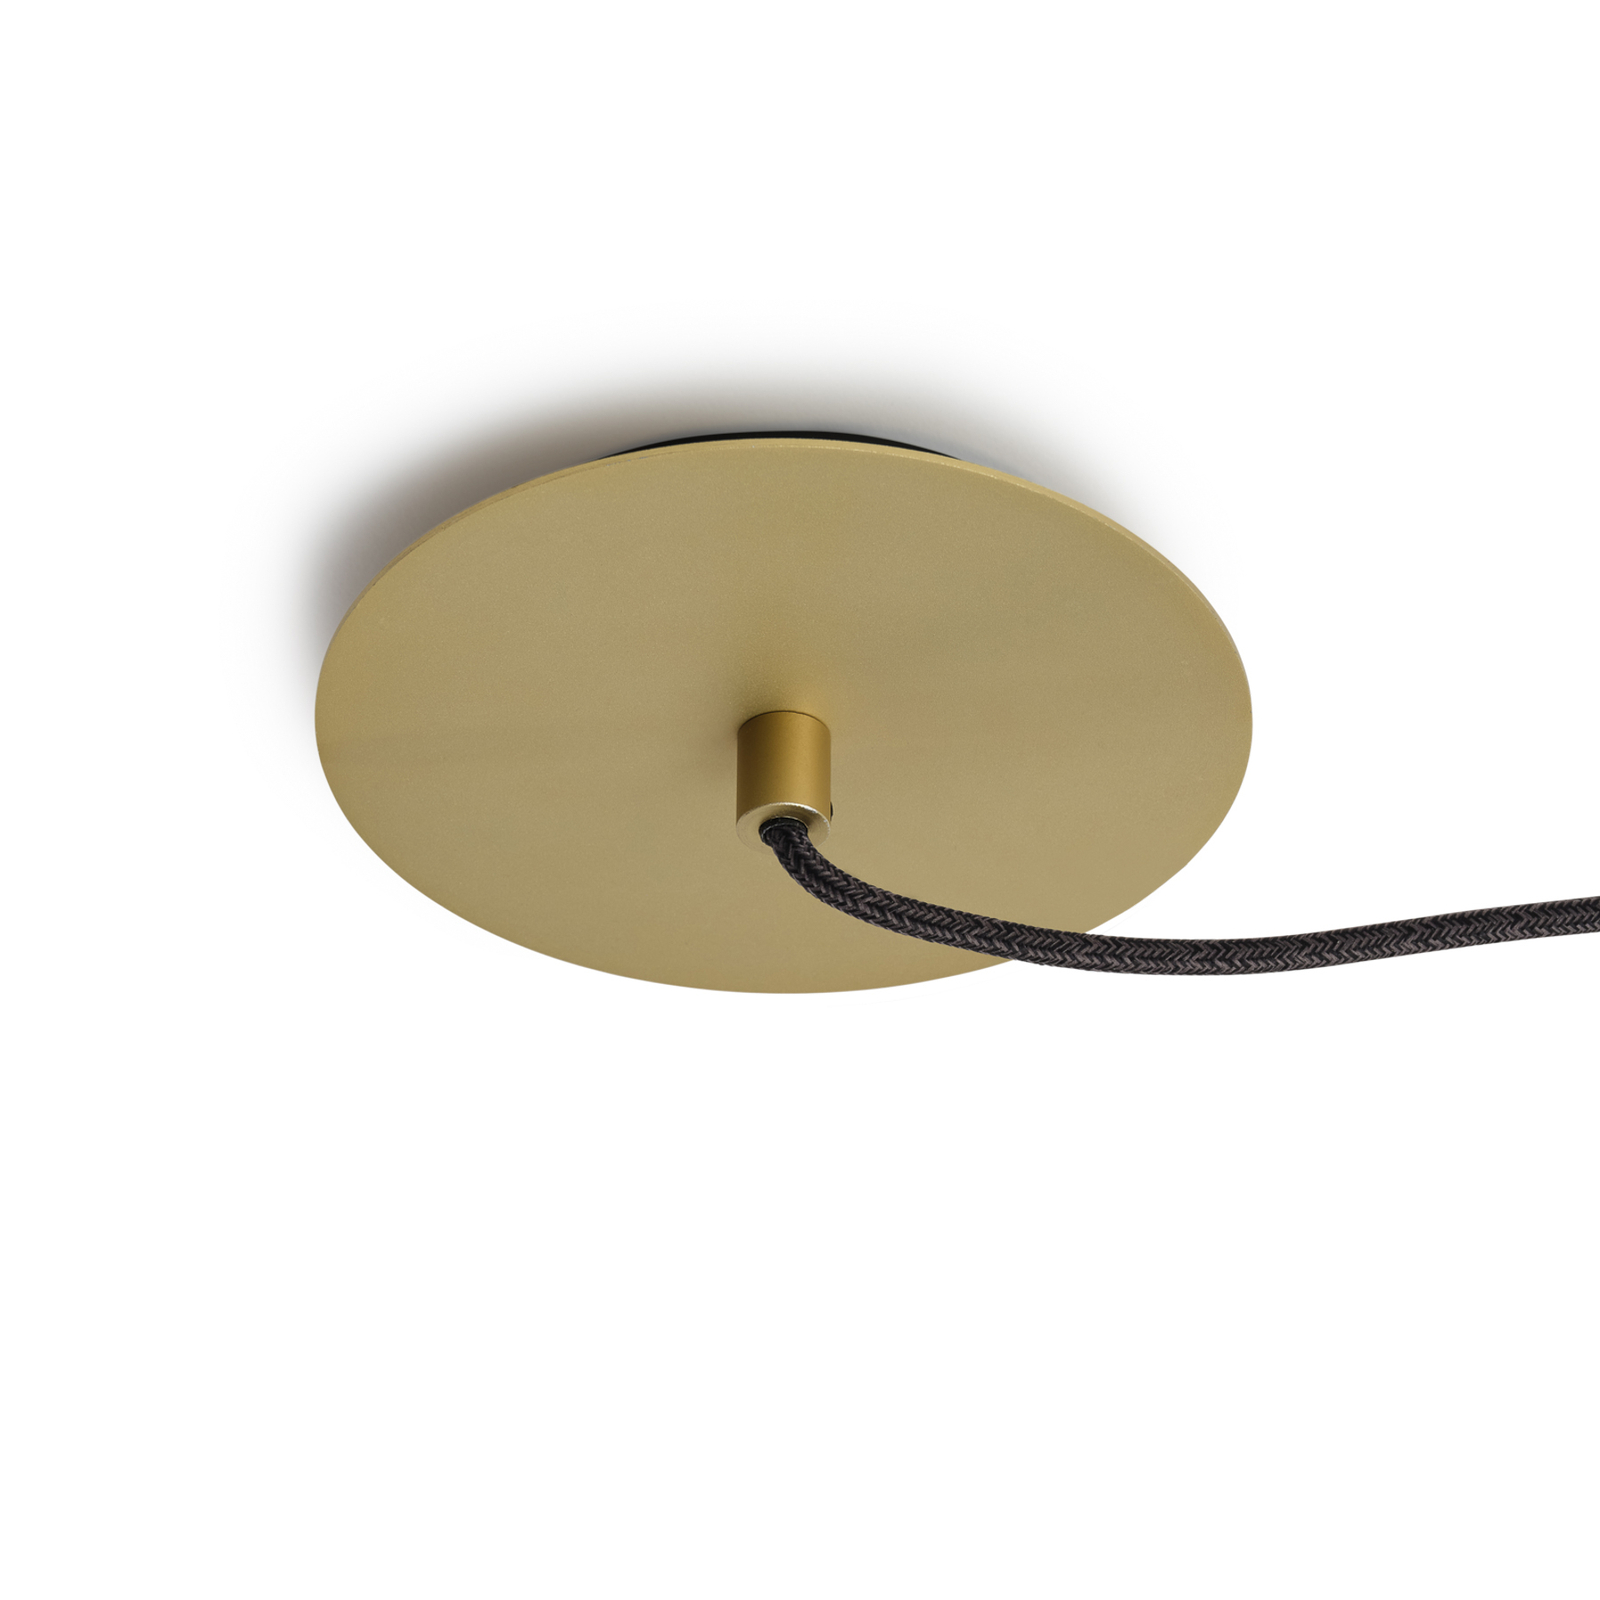 Tala hanglamp Loop small, aluminium, LED-bol IV, goud